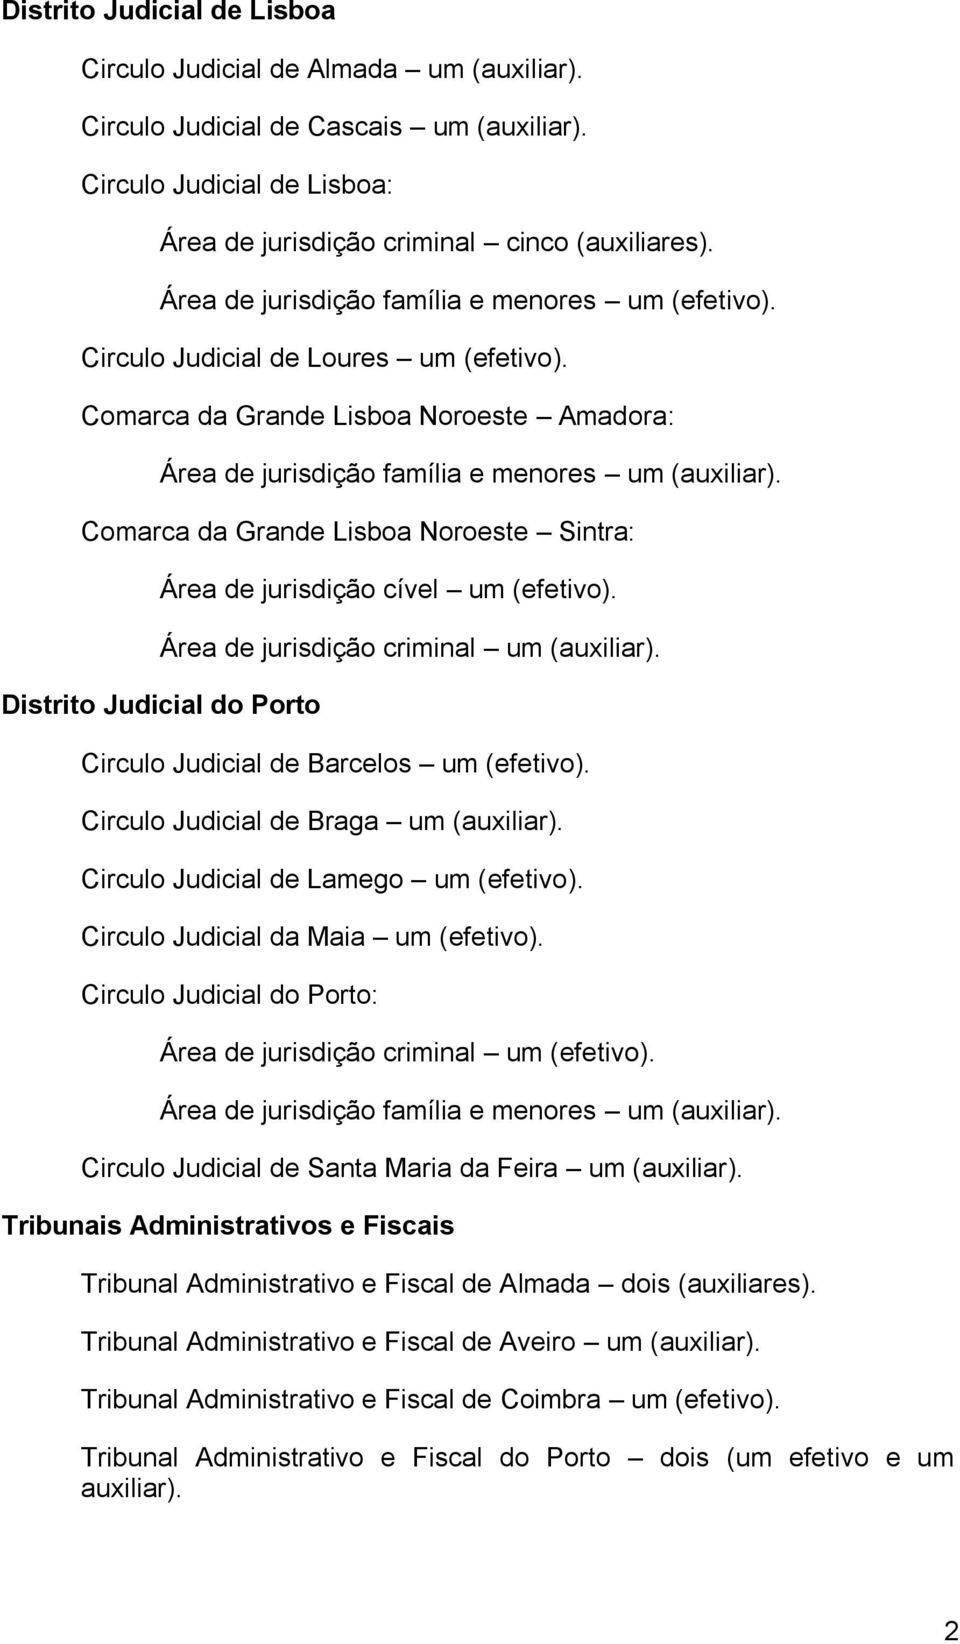 Comarca da Grande Lisboa Noroeste Sintra: Área de jurisdição cível um (efetivo). Área de jurisdição criminal um (auxiliar). Distrito Judicial do Porto Circulo Judicial de Barcelos um (efetivo).